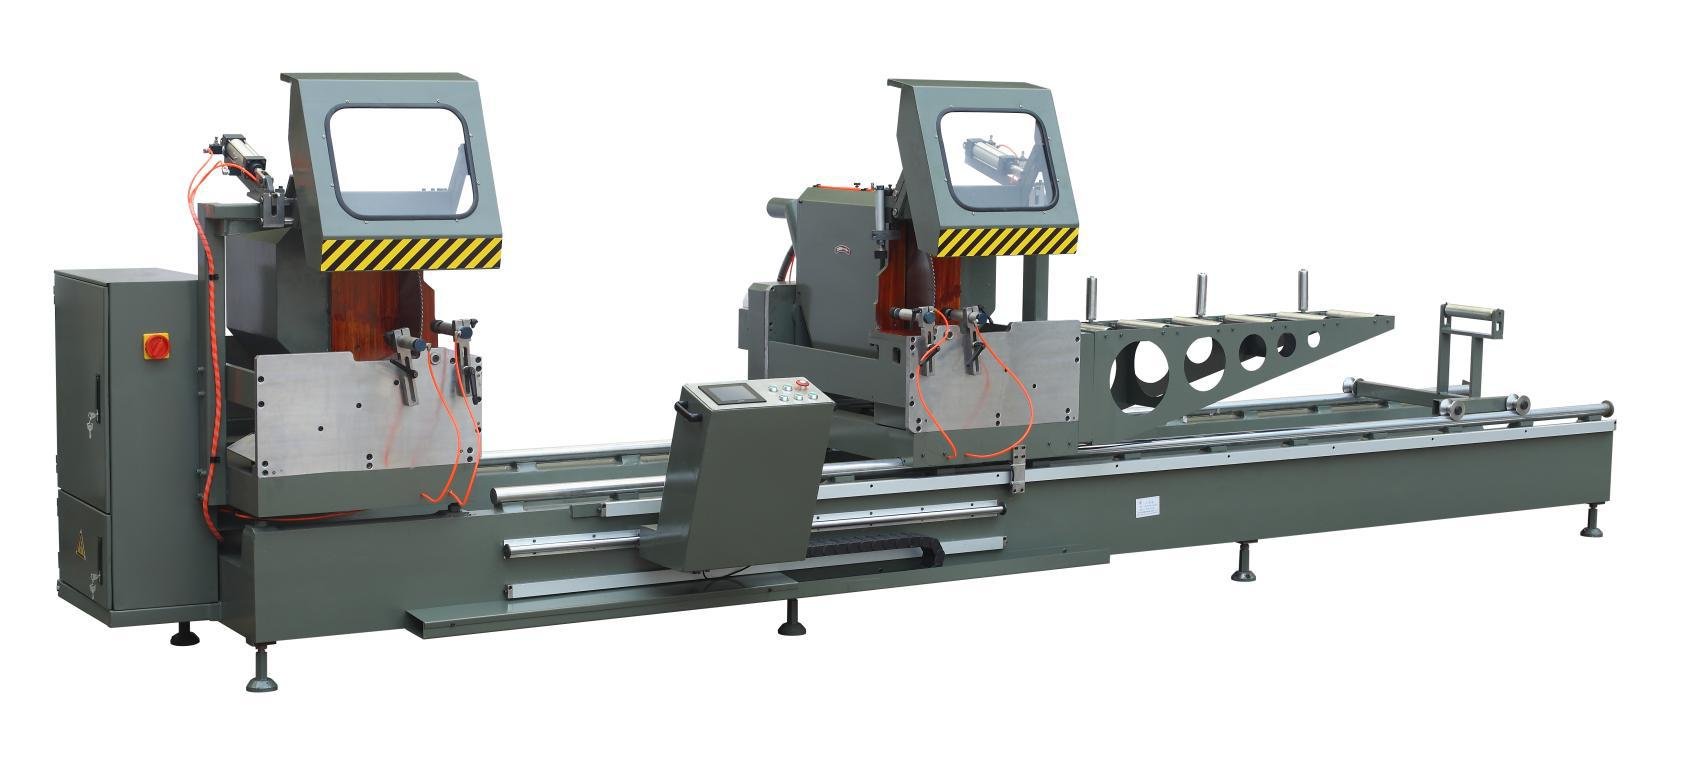 kingtool aluminium machinery Array image400